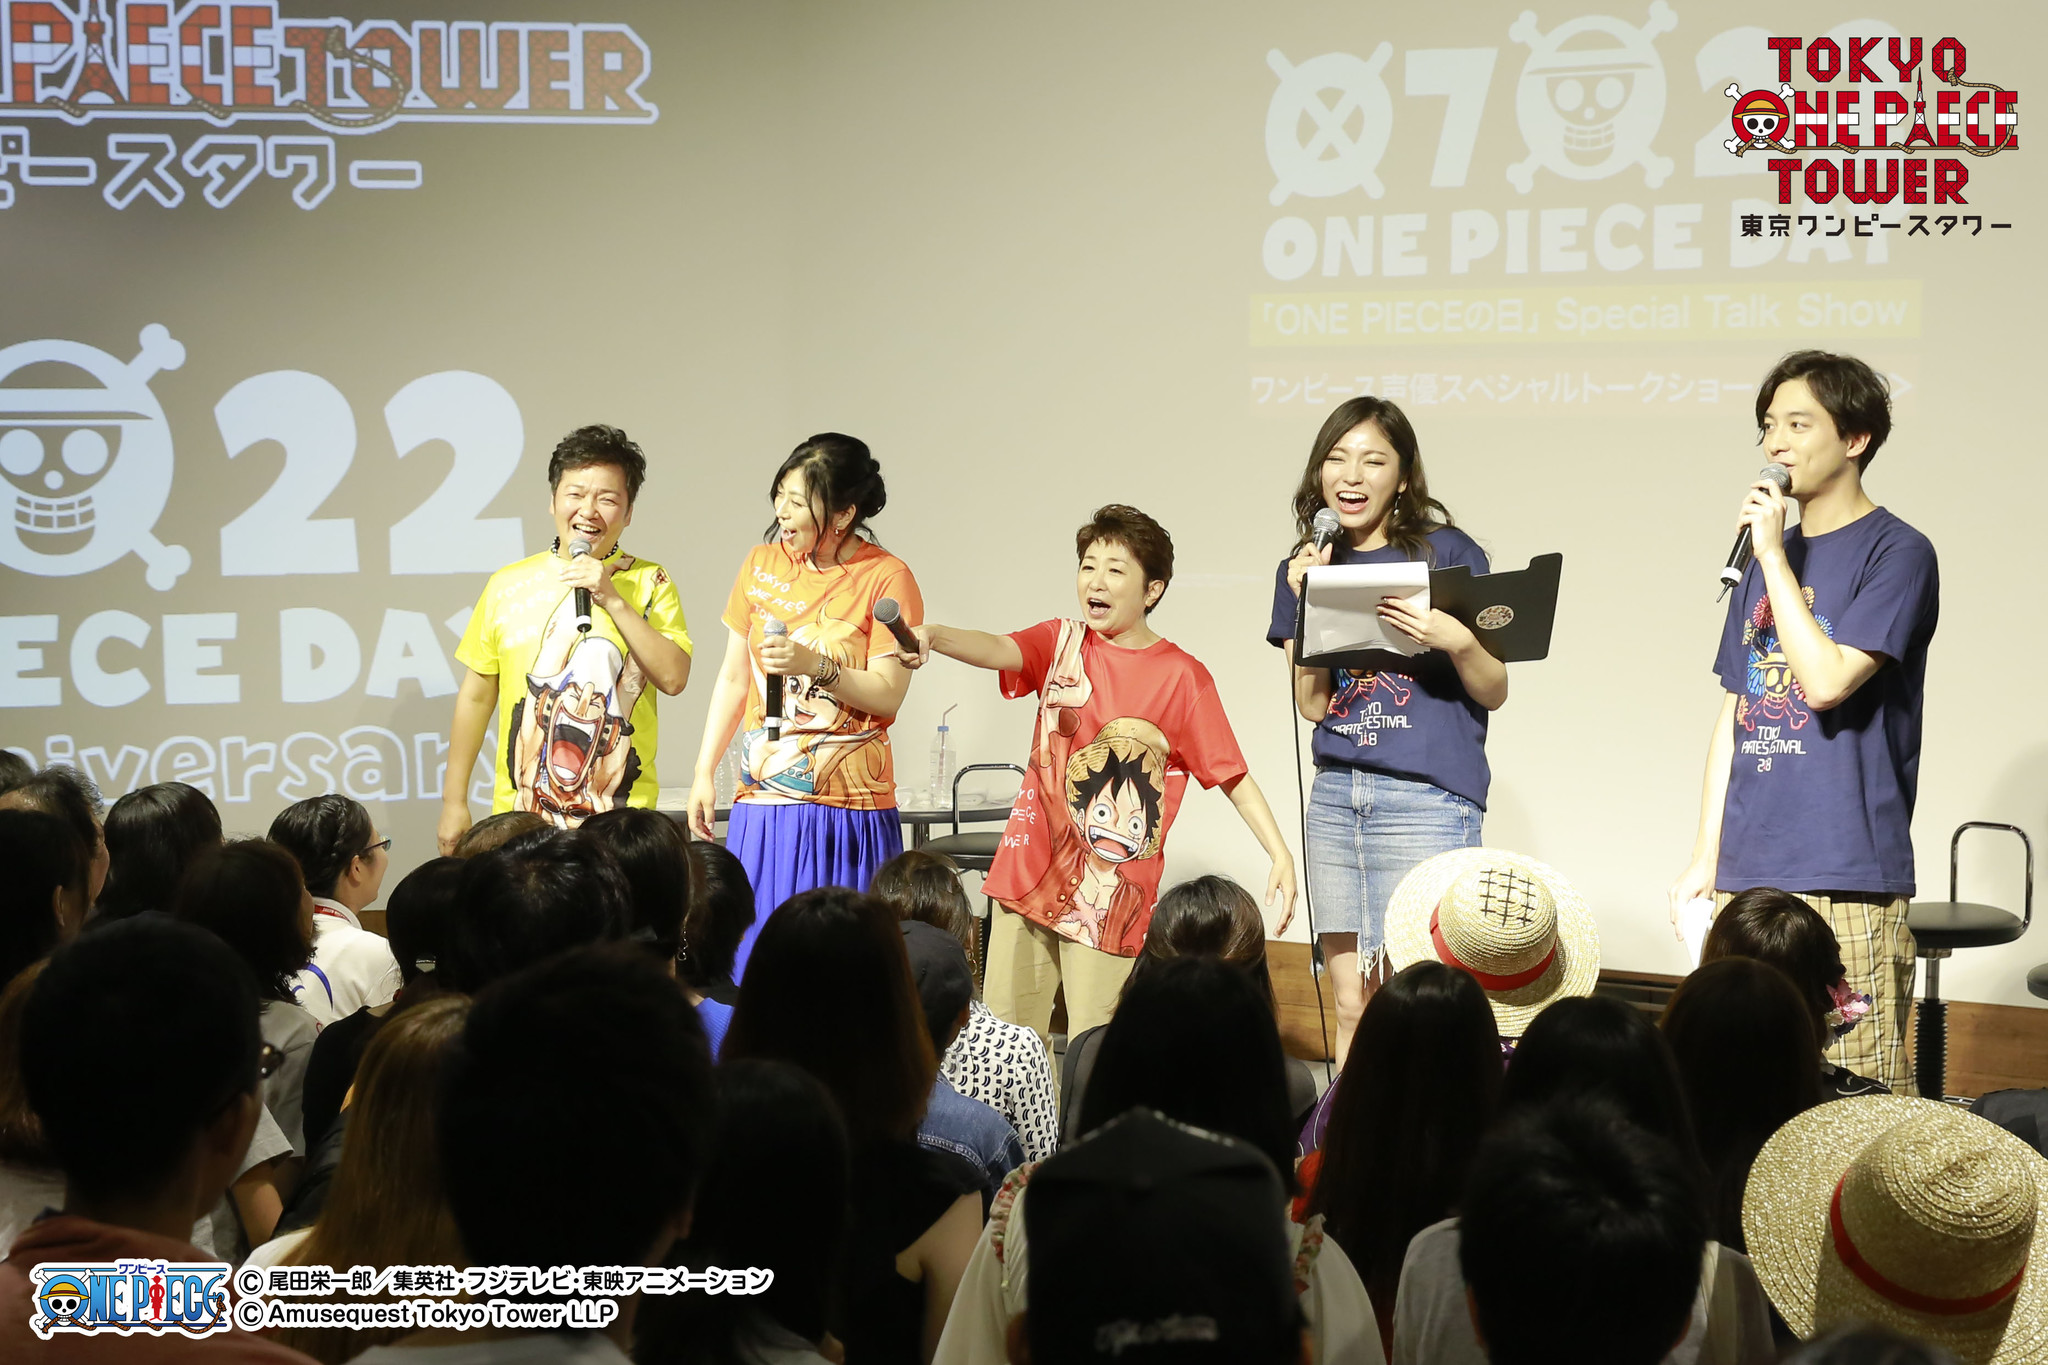 7月22日は One Pieceの日 One Piece を支えるオールスターズが集結したトークショーレポート 東京ワンピースタワー の 新スポット 新イベントもスタート 東京ワンピースタワーのプレスリリース